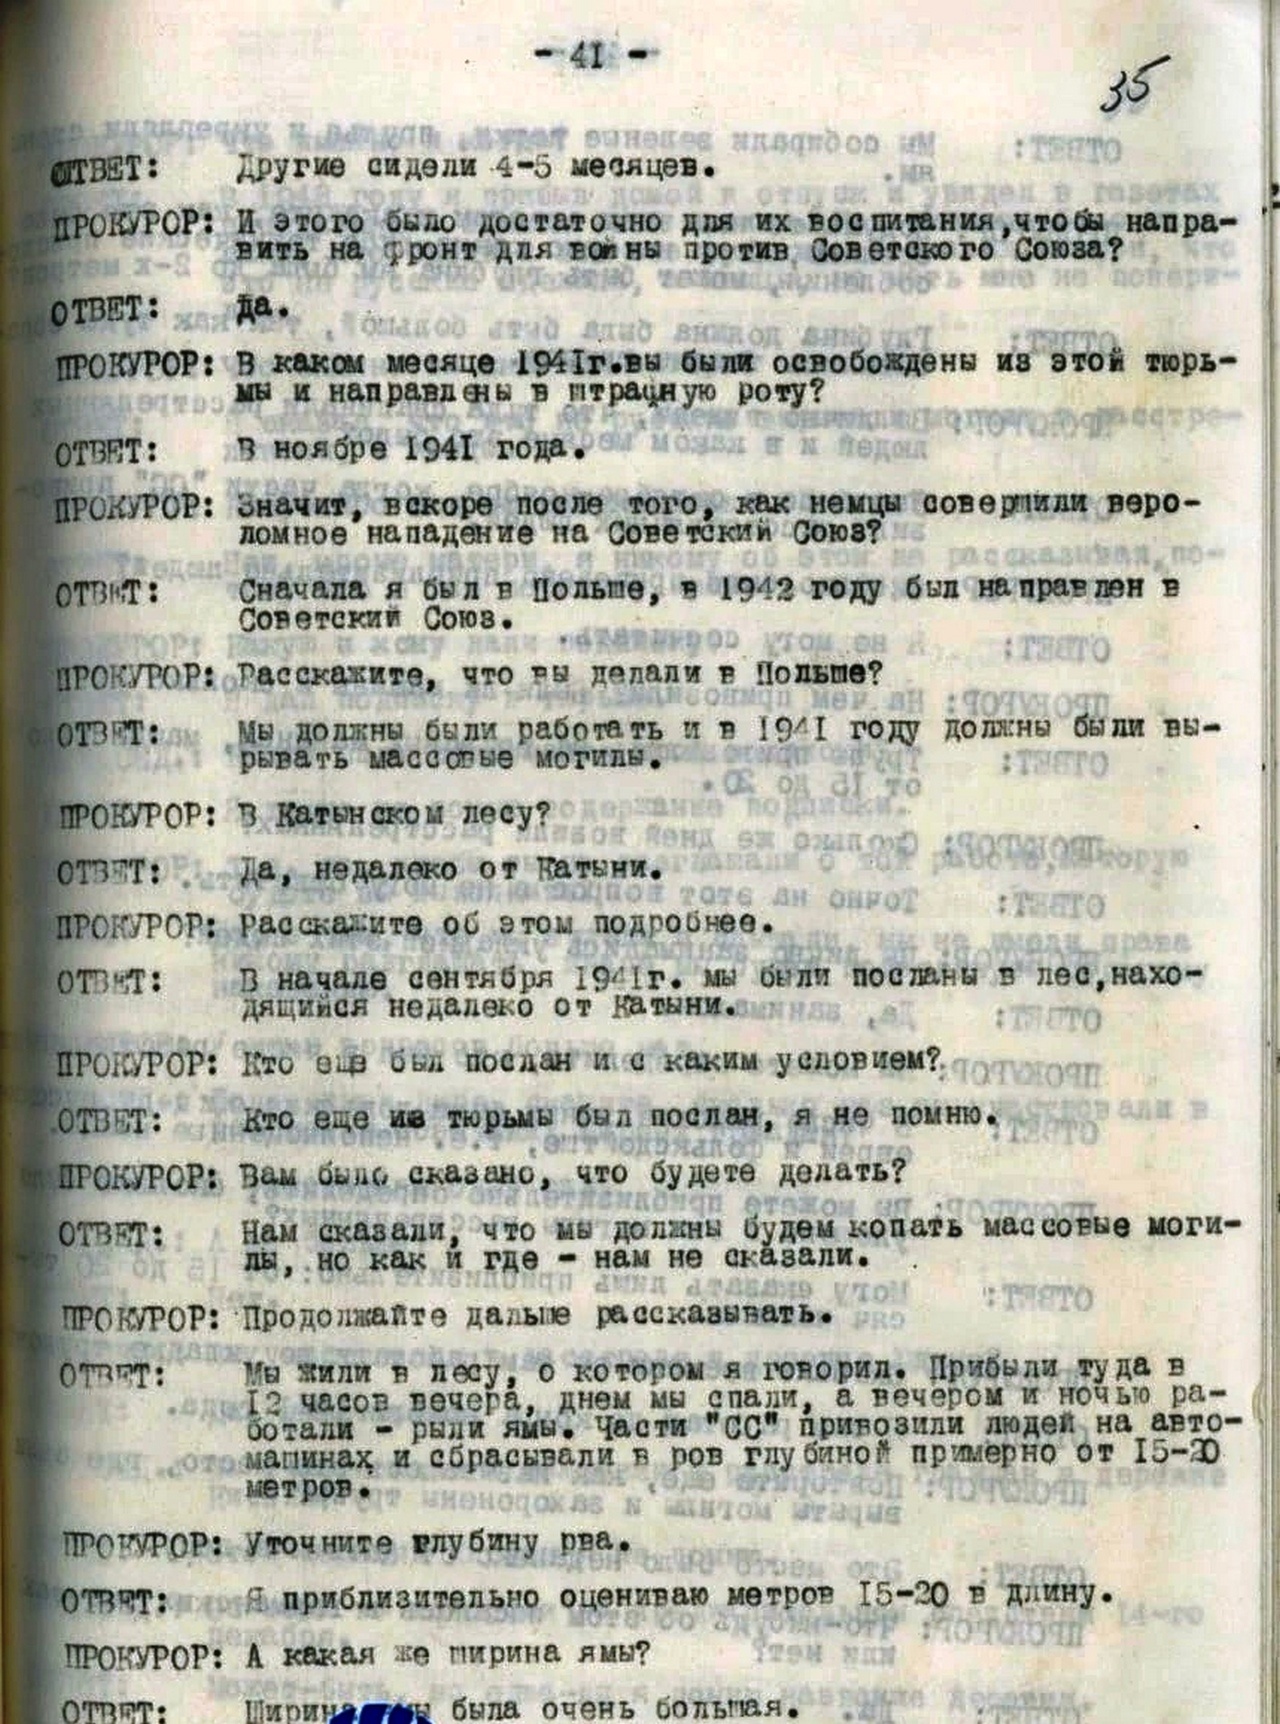 Копия протокола допроса немецкого военнопленного Арно Дюре (стр. 41).